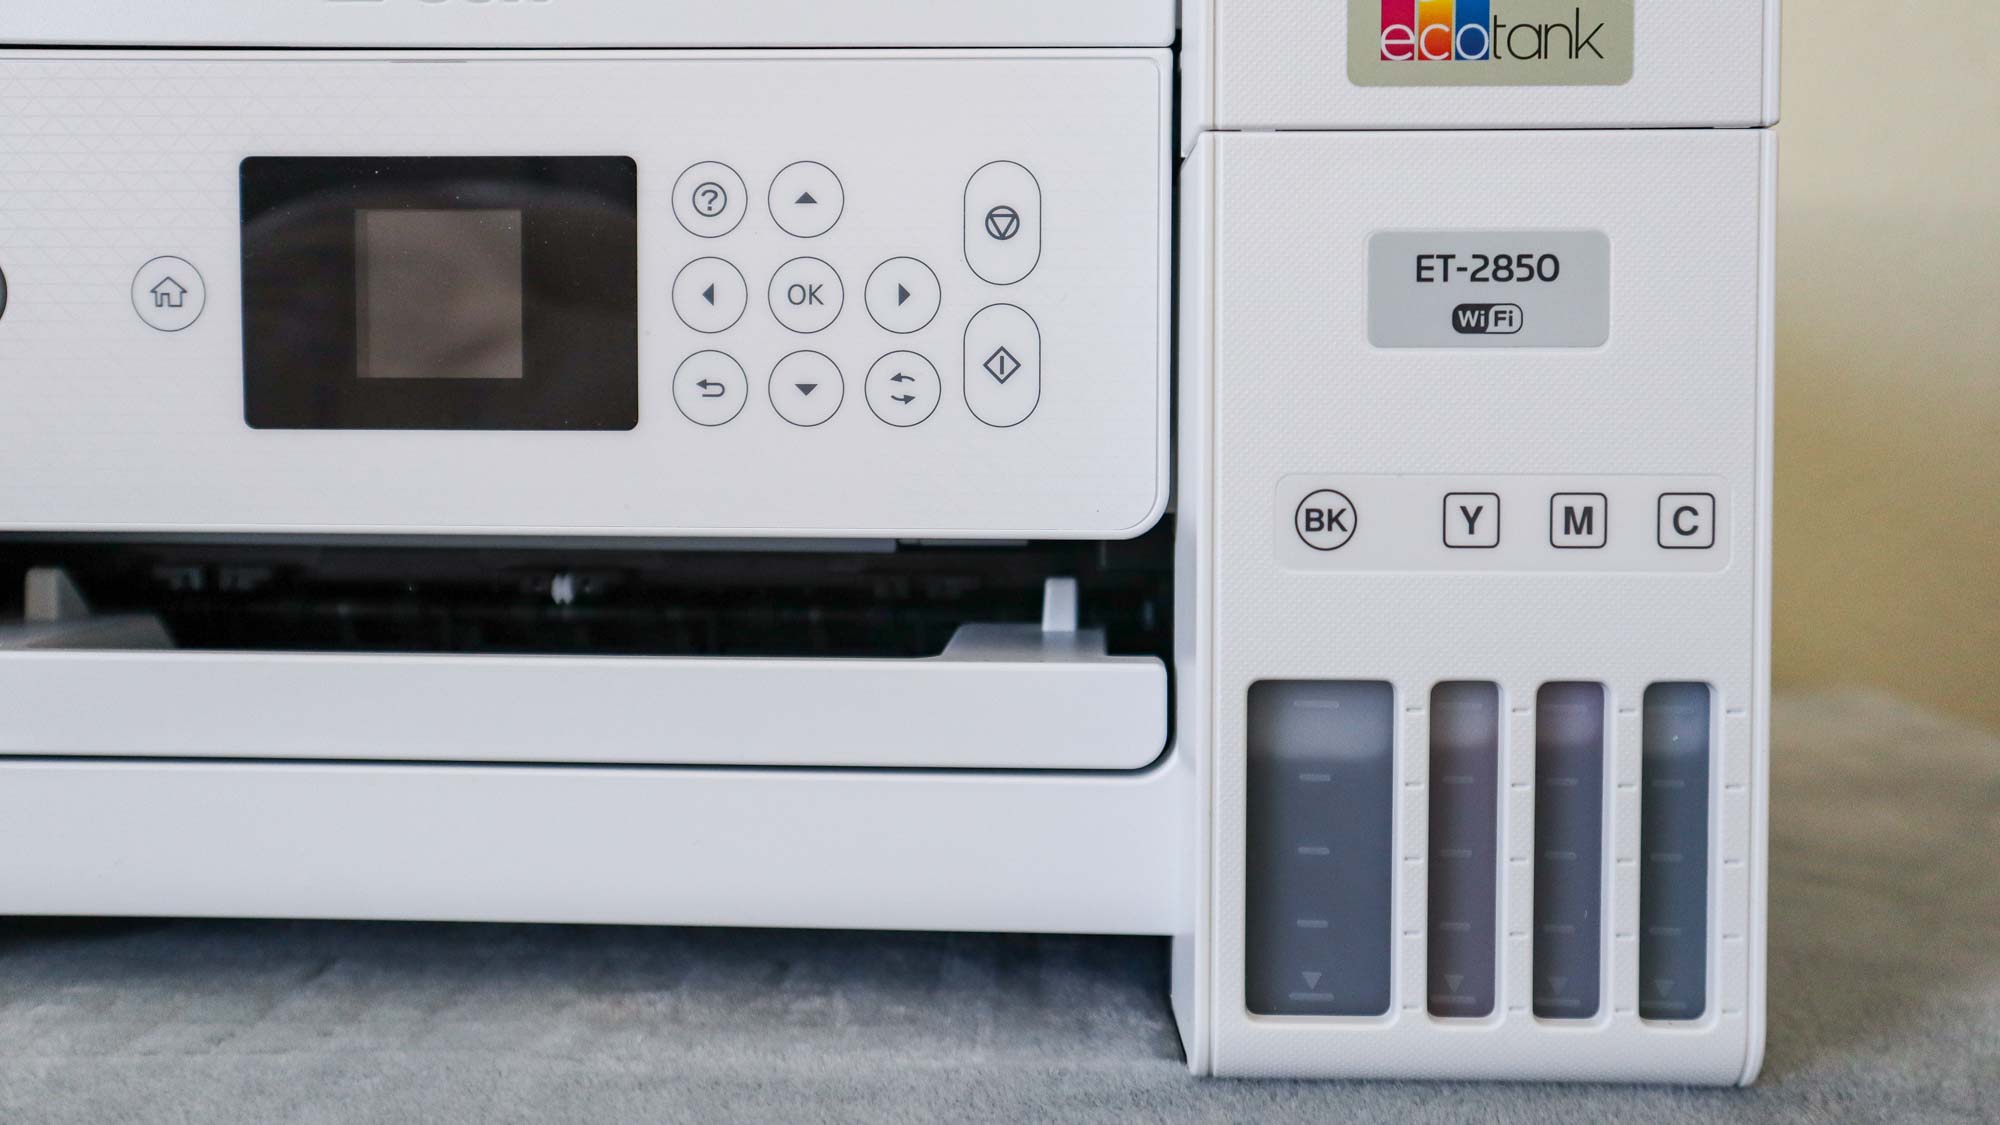 Epson ET-2850 printer sitting on desk